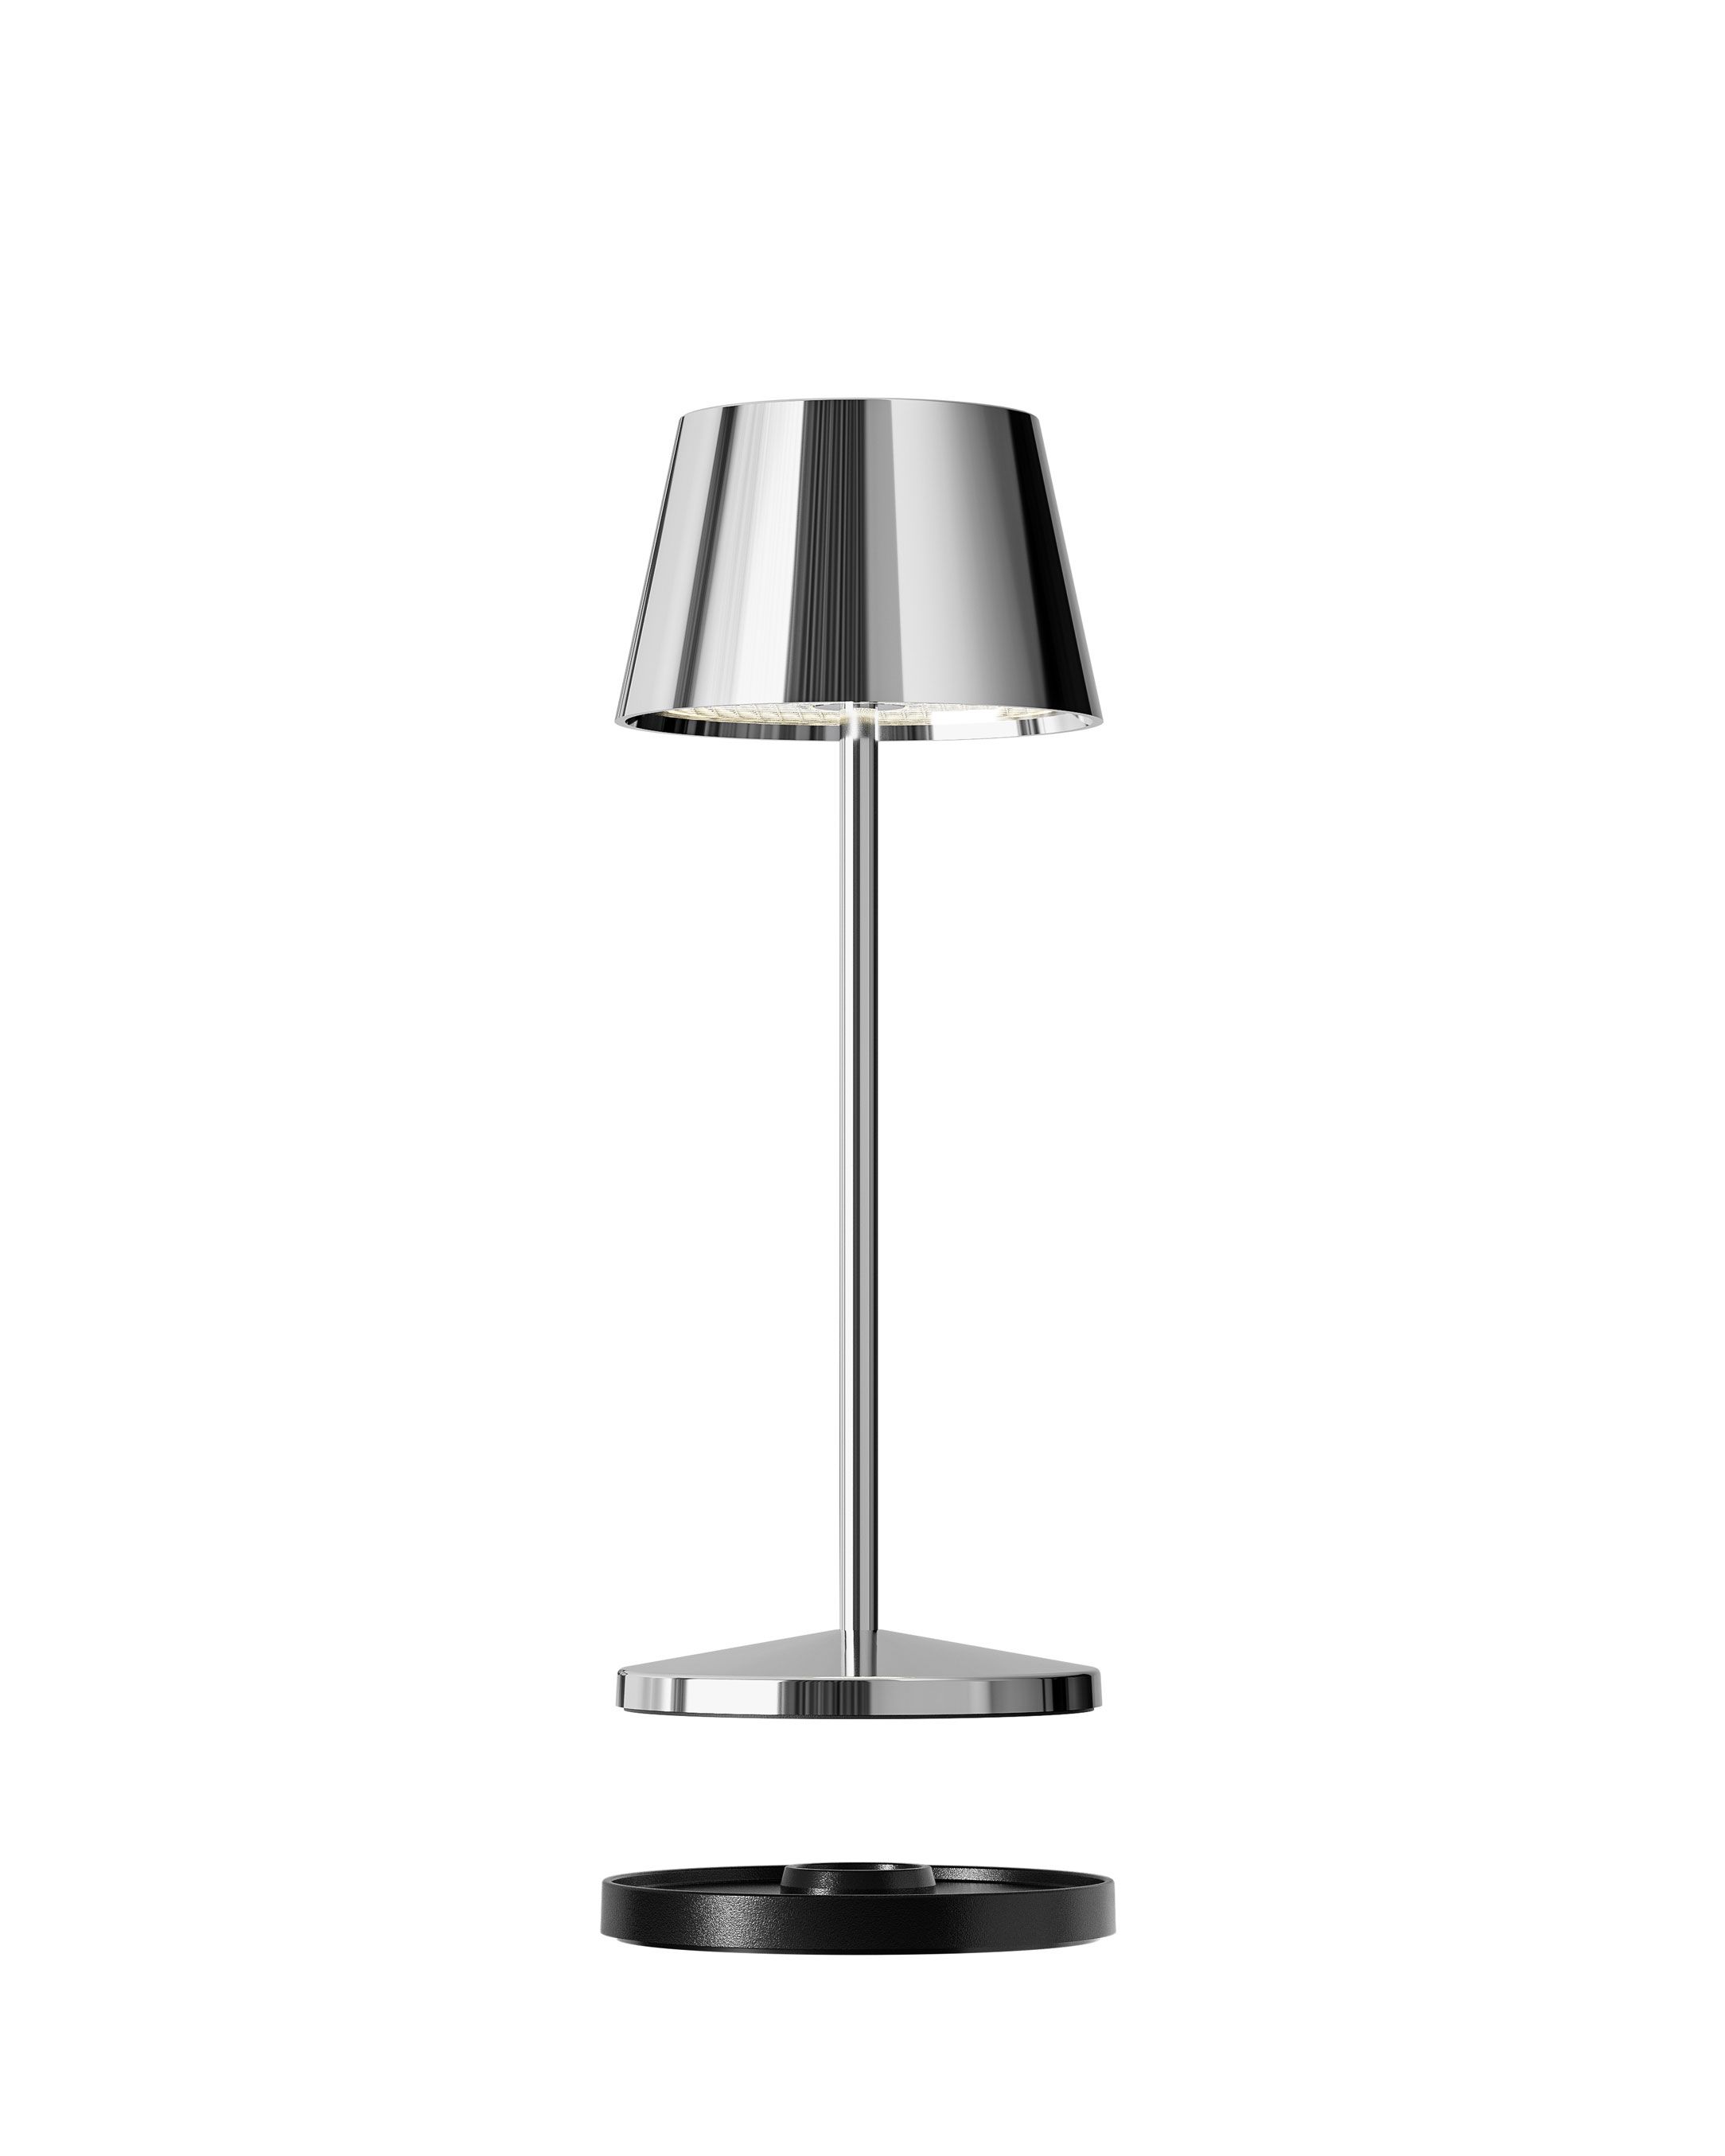 Seoul Micro LED buiten tafellamp | oplaadbaar (accu) | chroom | Dimbaar | waterdicht IP65 | made by Villeroy & Boch